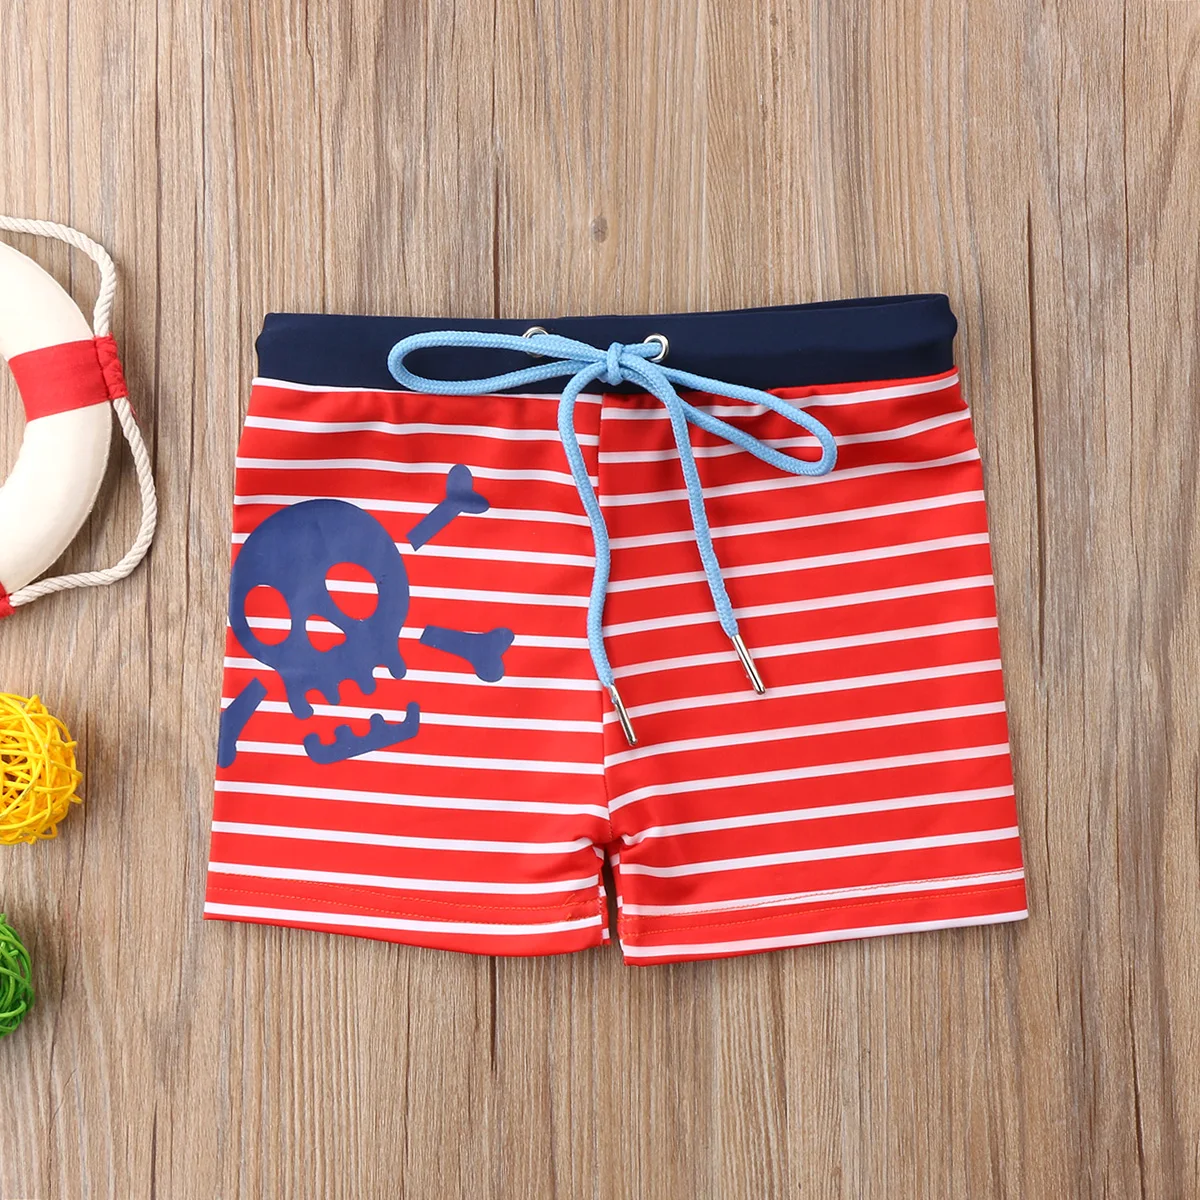 Новые летние детские плавки для мальчиков, шорты, плавки, полосатые пляжные шорты со звездами, праздничная одежда для купания, для детей 6 мес.-6 лет